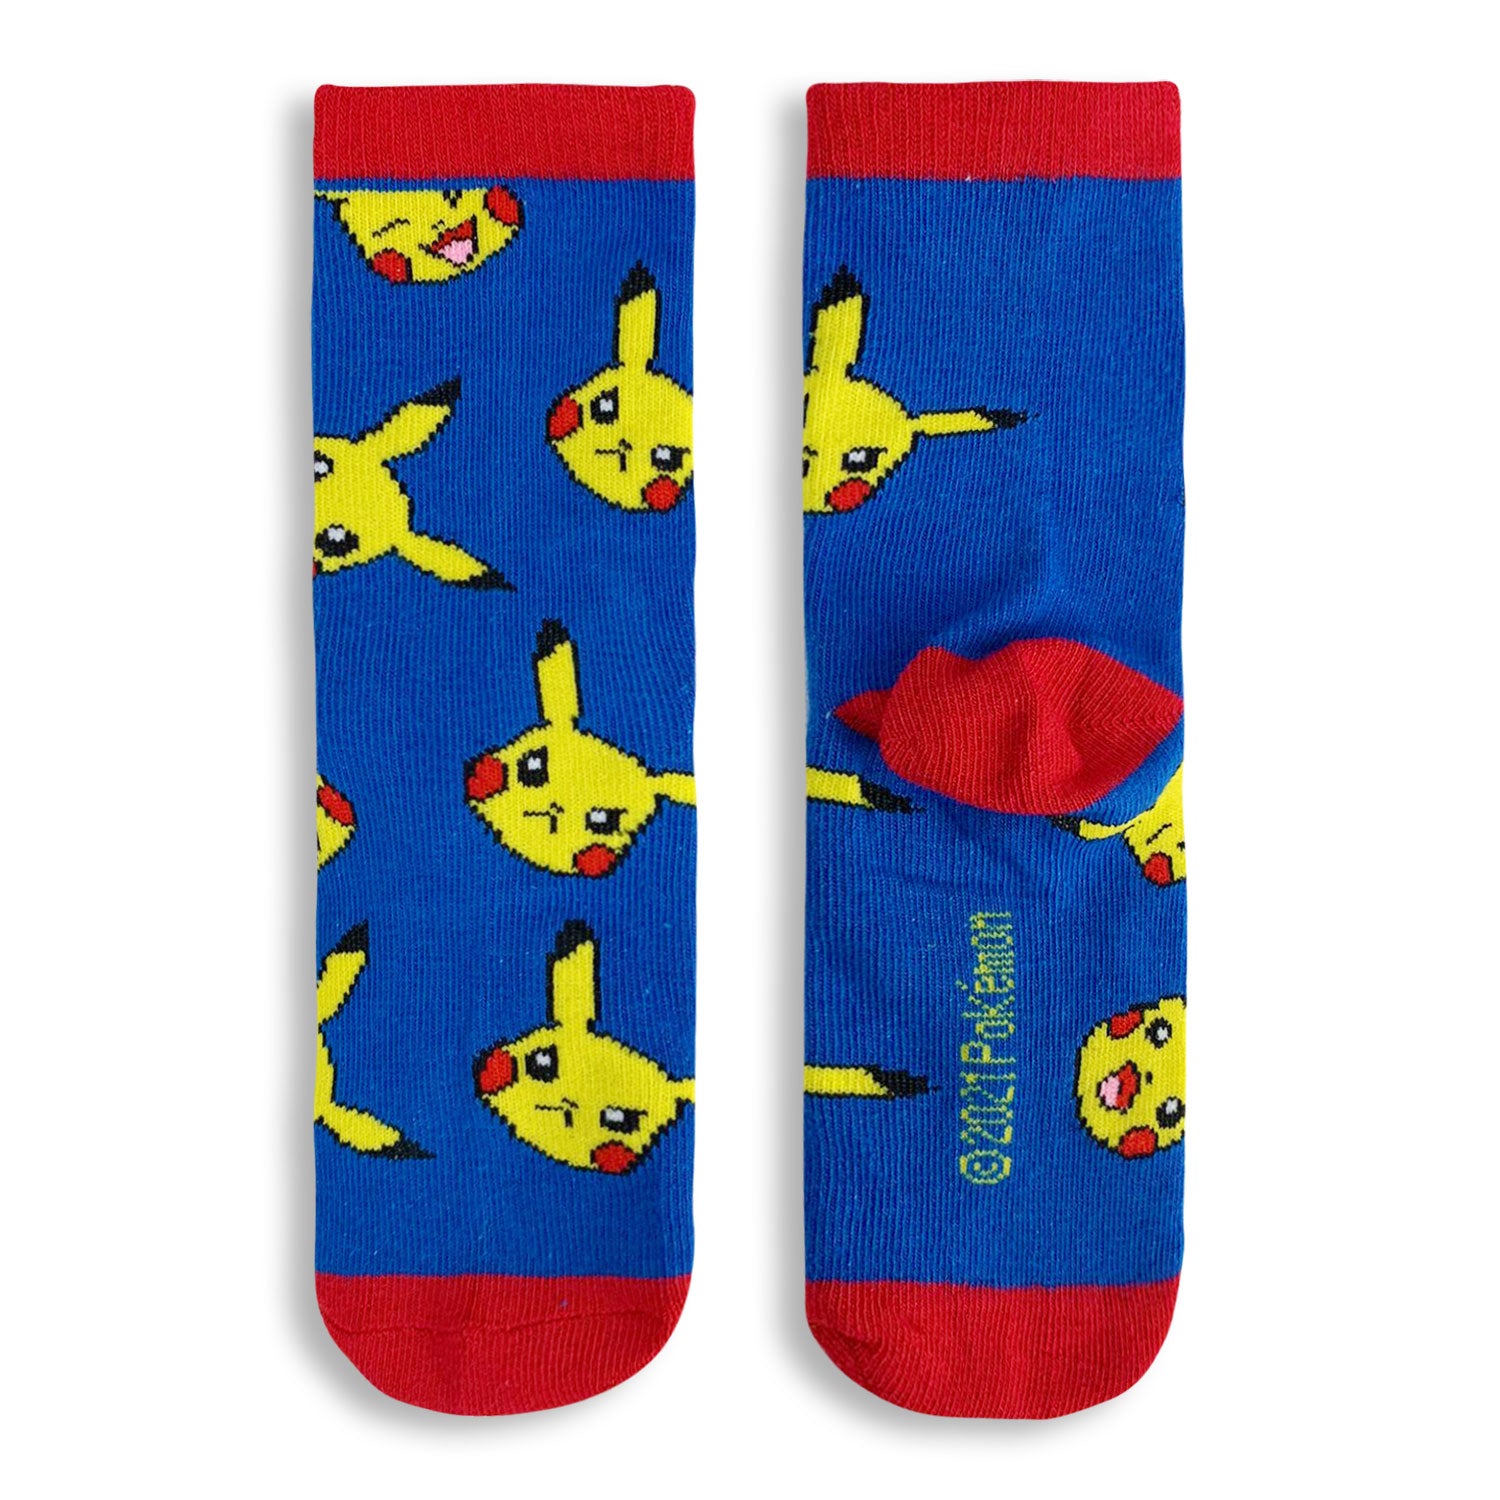 Calzini lunghi Pokemon pikachu 3 paia per bambino in filato cotone stampati 4833